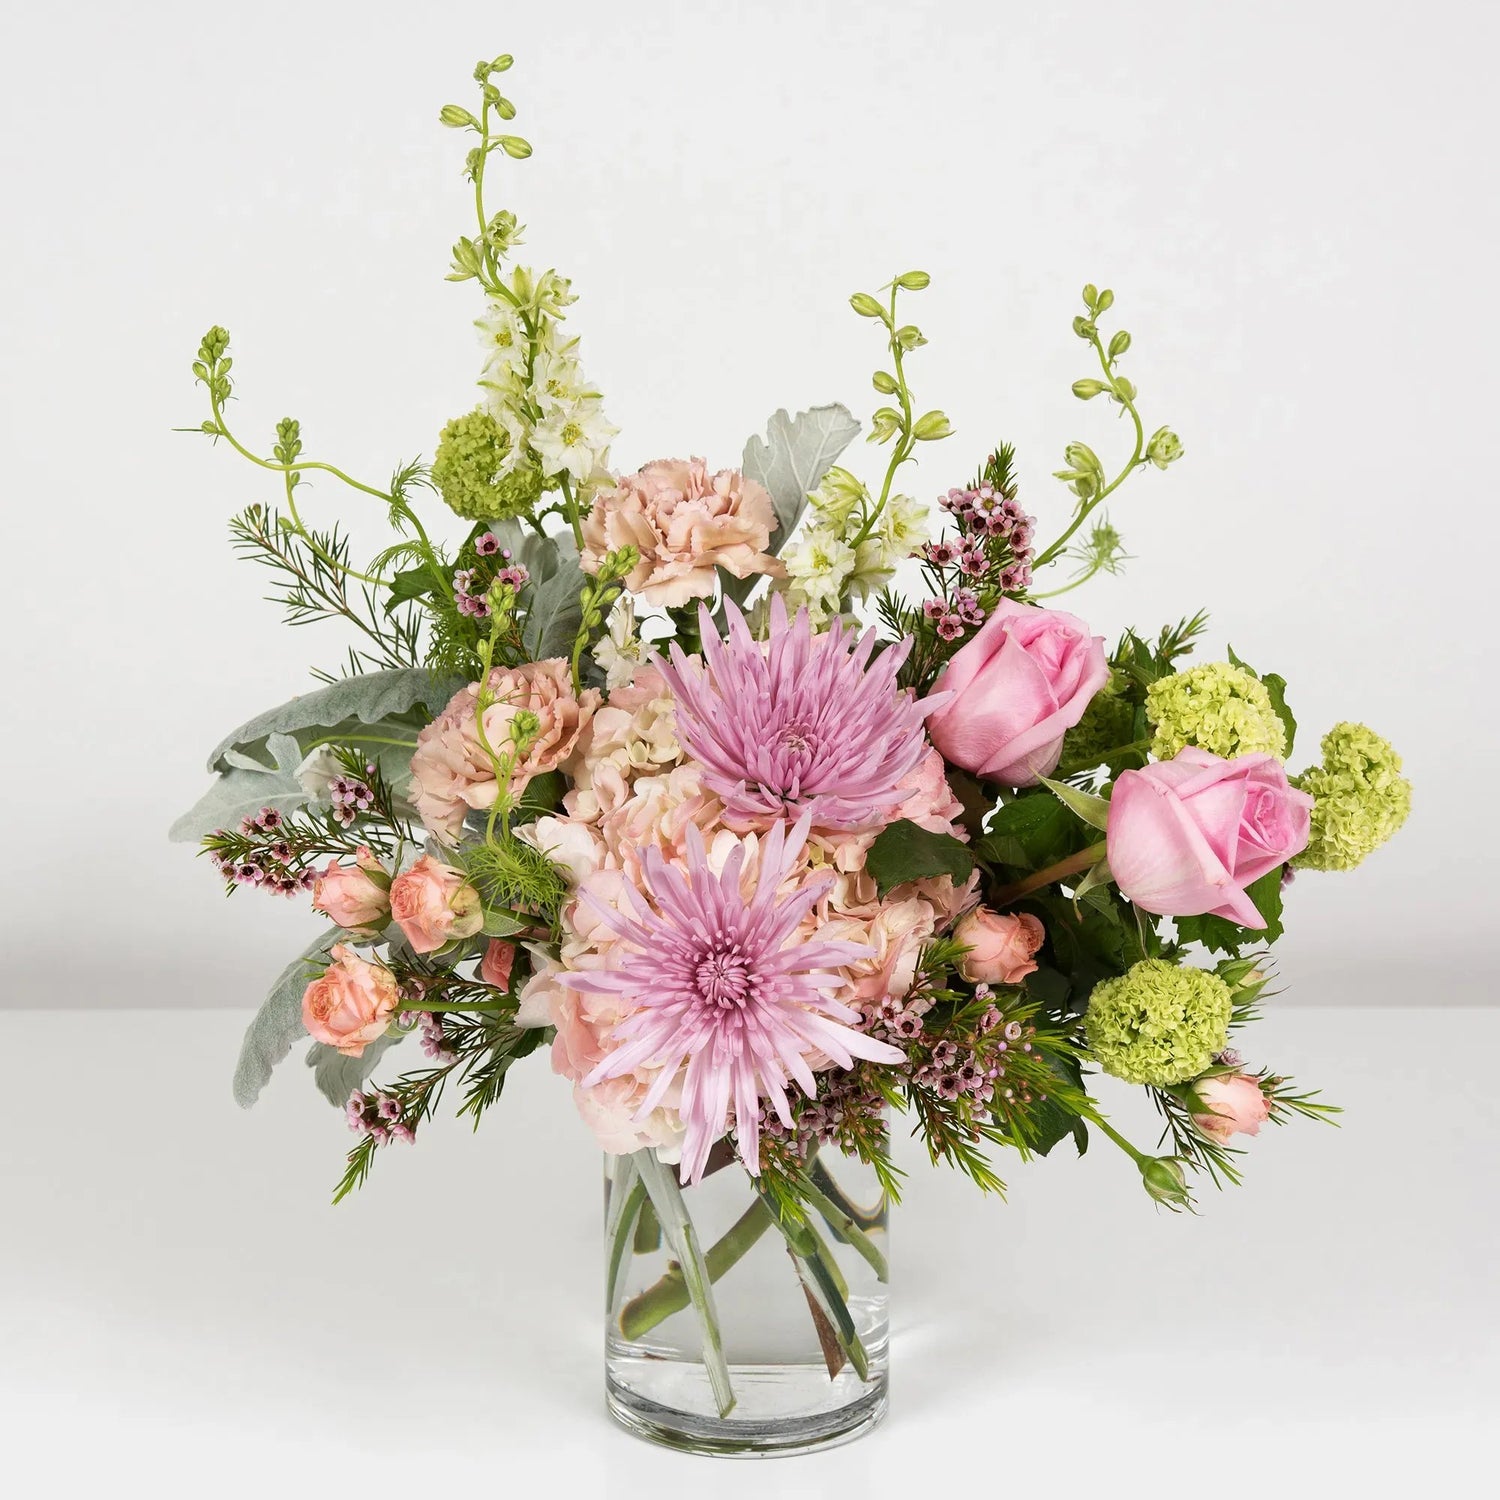 Blooms & Blush: Floral Design Workshop